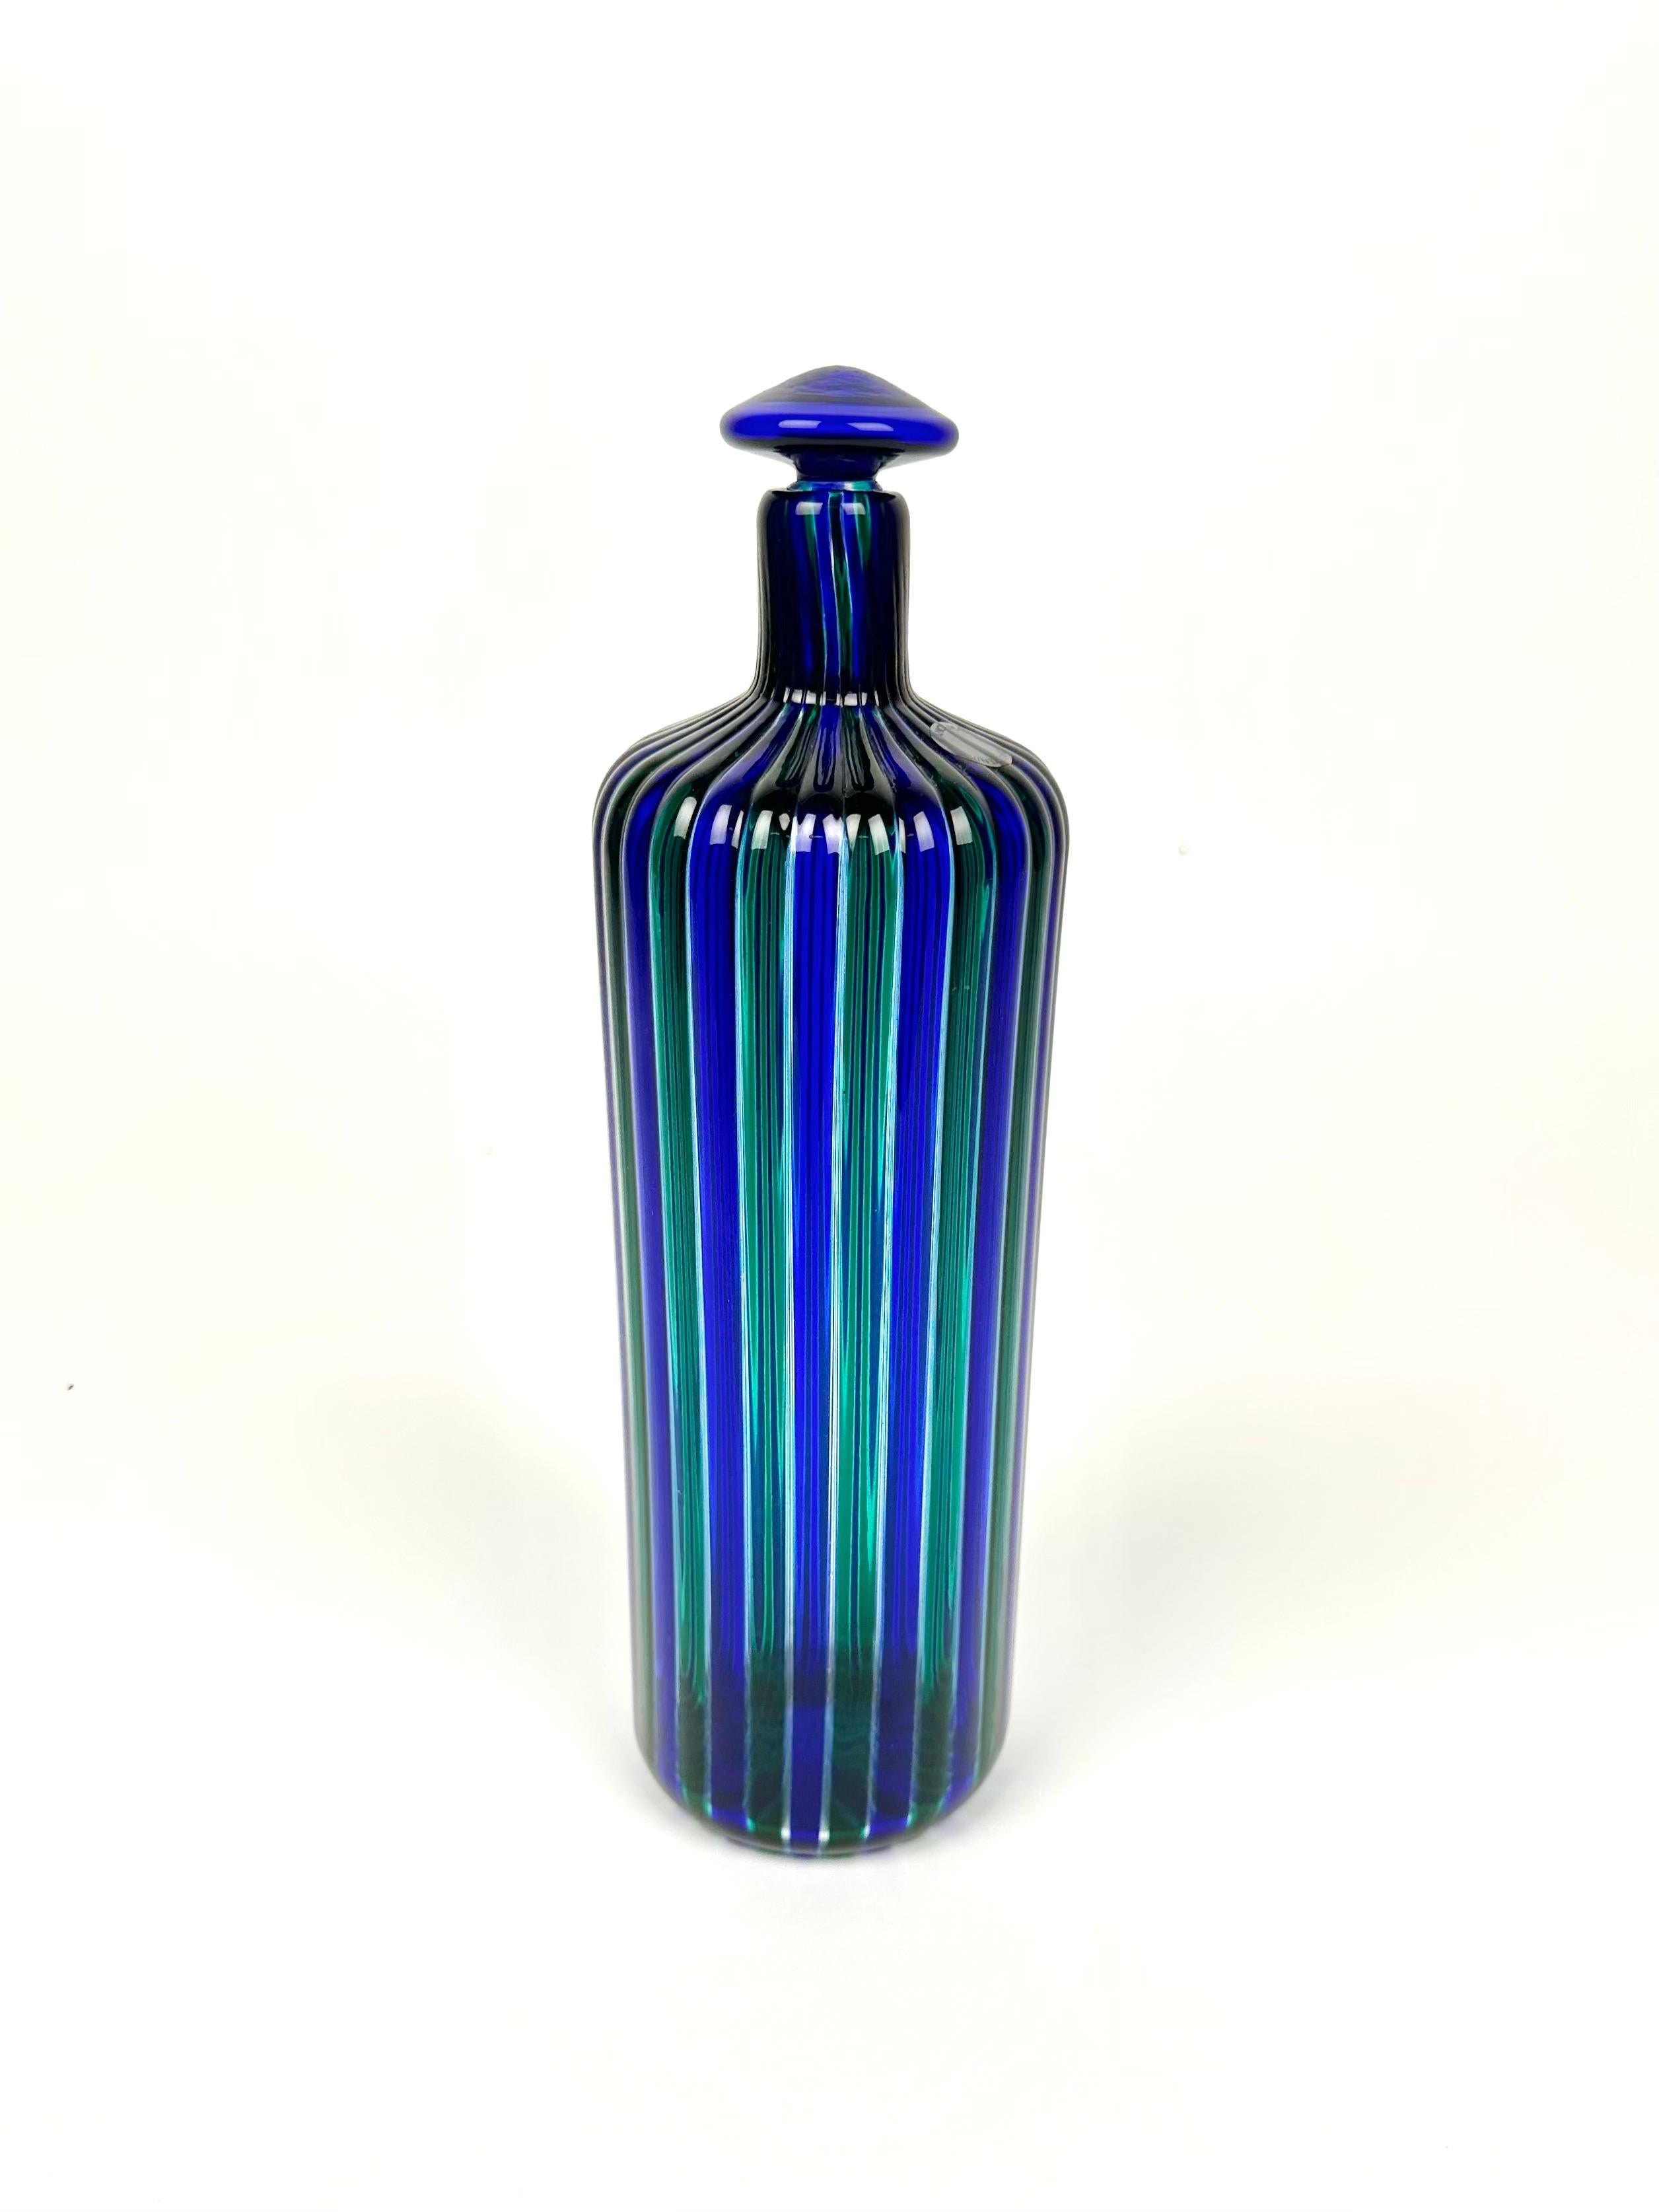 Erstaunliche blaue und grüne Muranoglasflasche von Fulvio Bianconi für Venini.

Signiert 